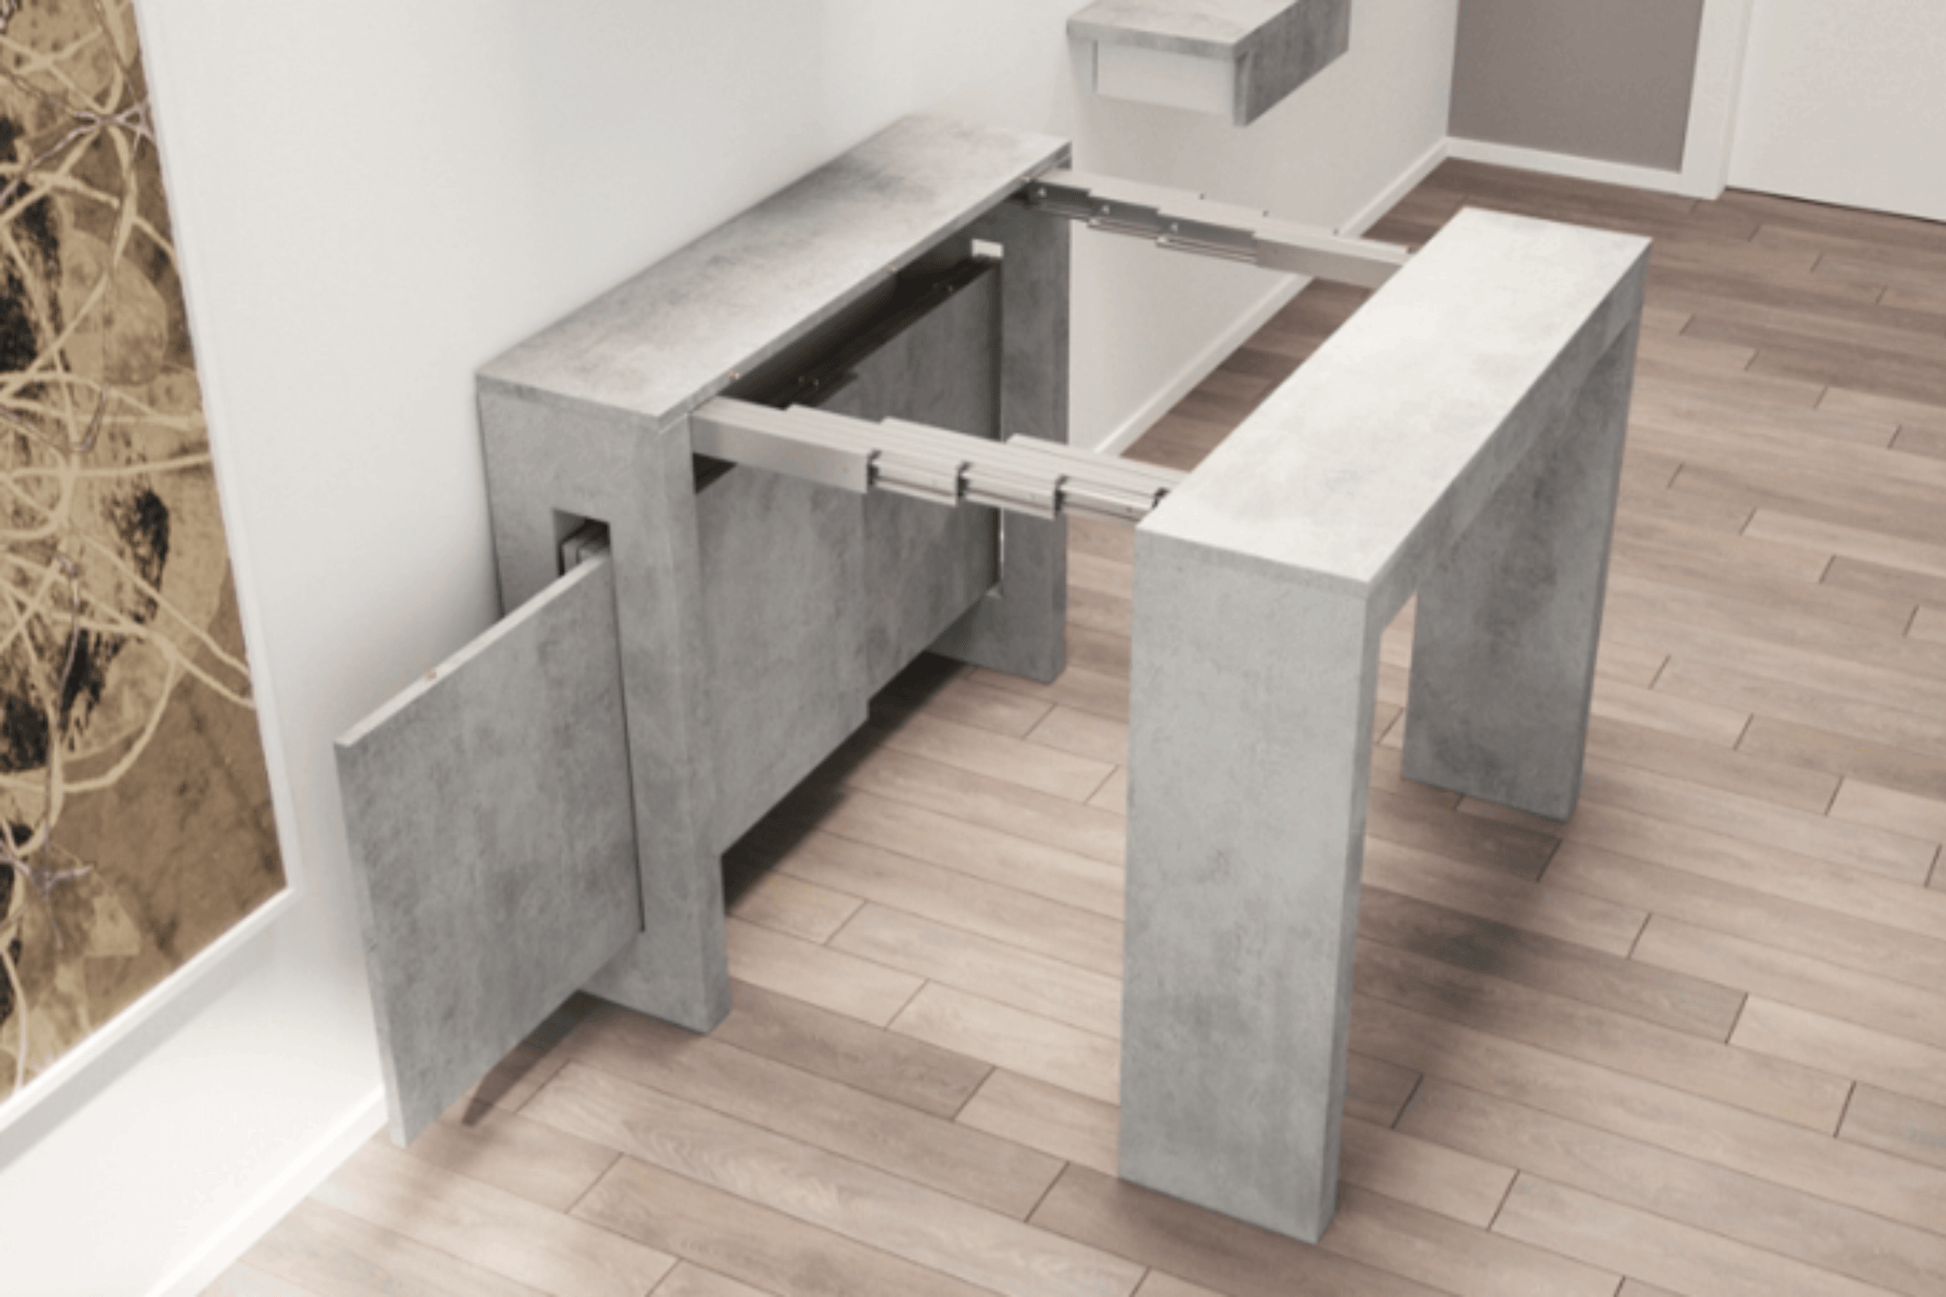 Bari Expandable Console Table Light Gray Model TC-540B-GR - Venini Furniture 